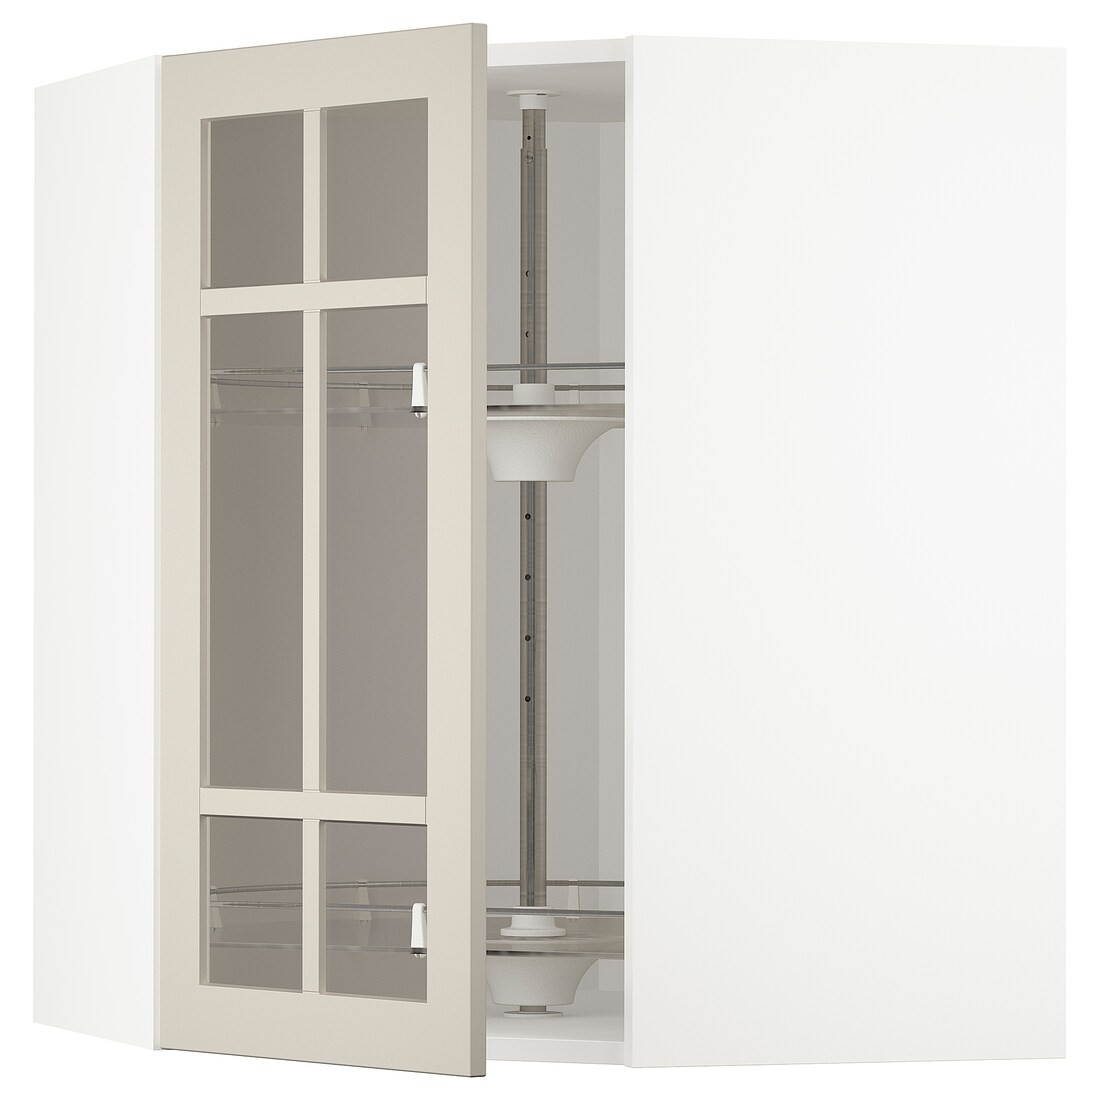 METOD МЕТОД Угловой настенный шкаф с каруселью / стеклянная дверь, белый / Stensund бежевый, 68x80 см